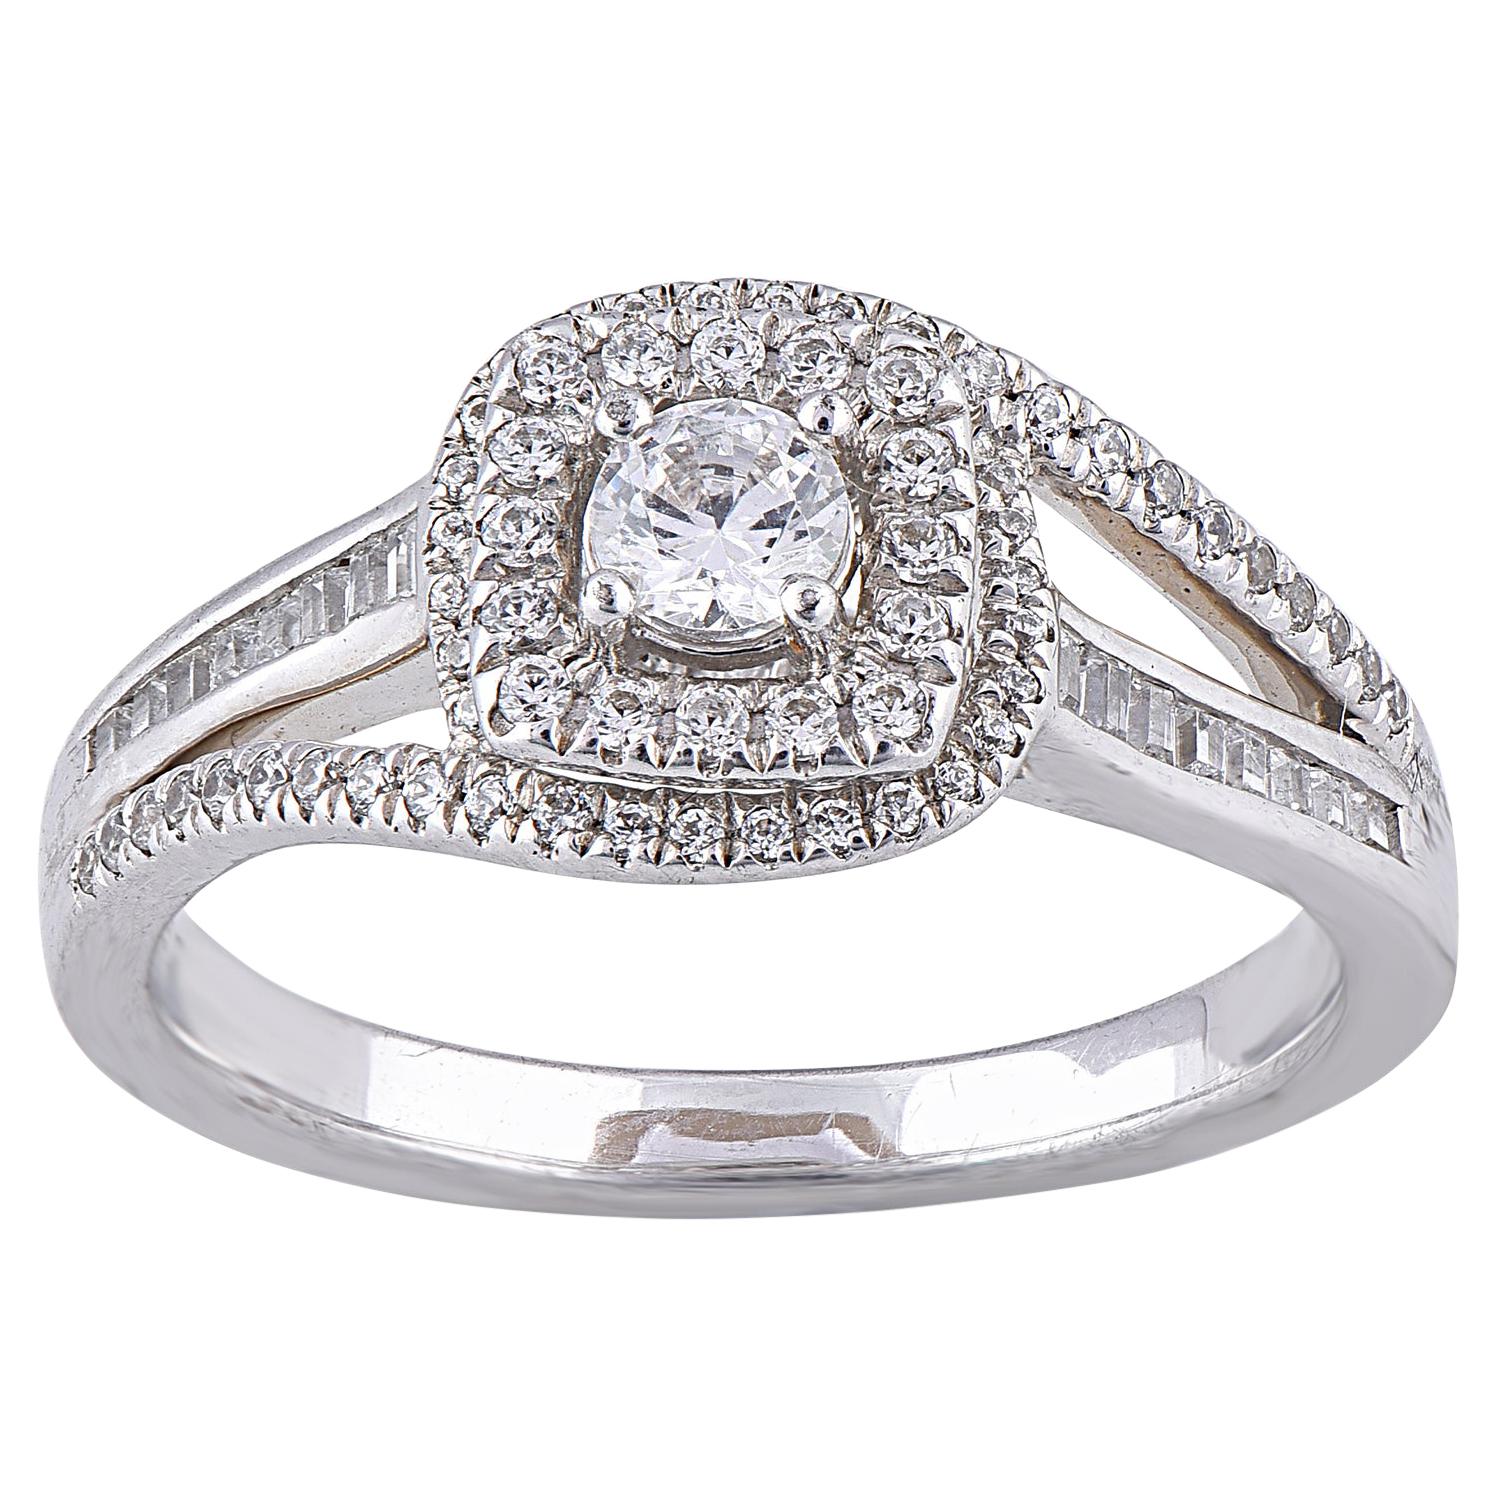 TJD 0.50 Carat Round Diamond 14 Karat White Gold Curvy Shank Engagement Ring